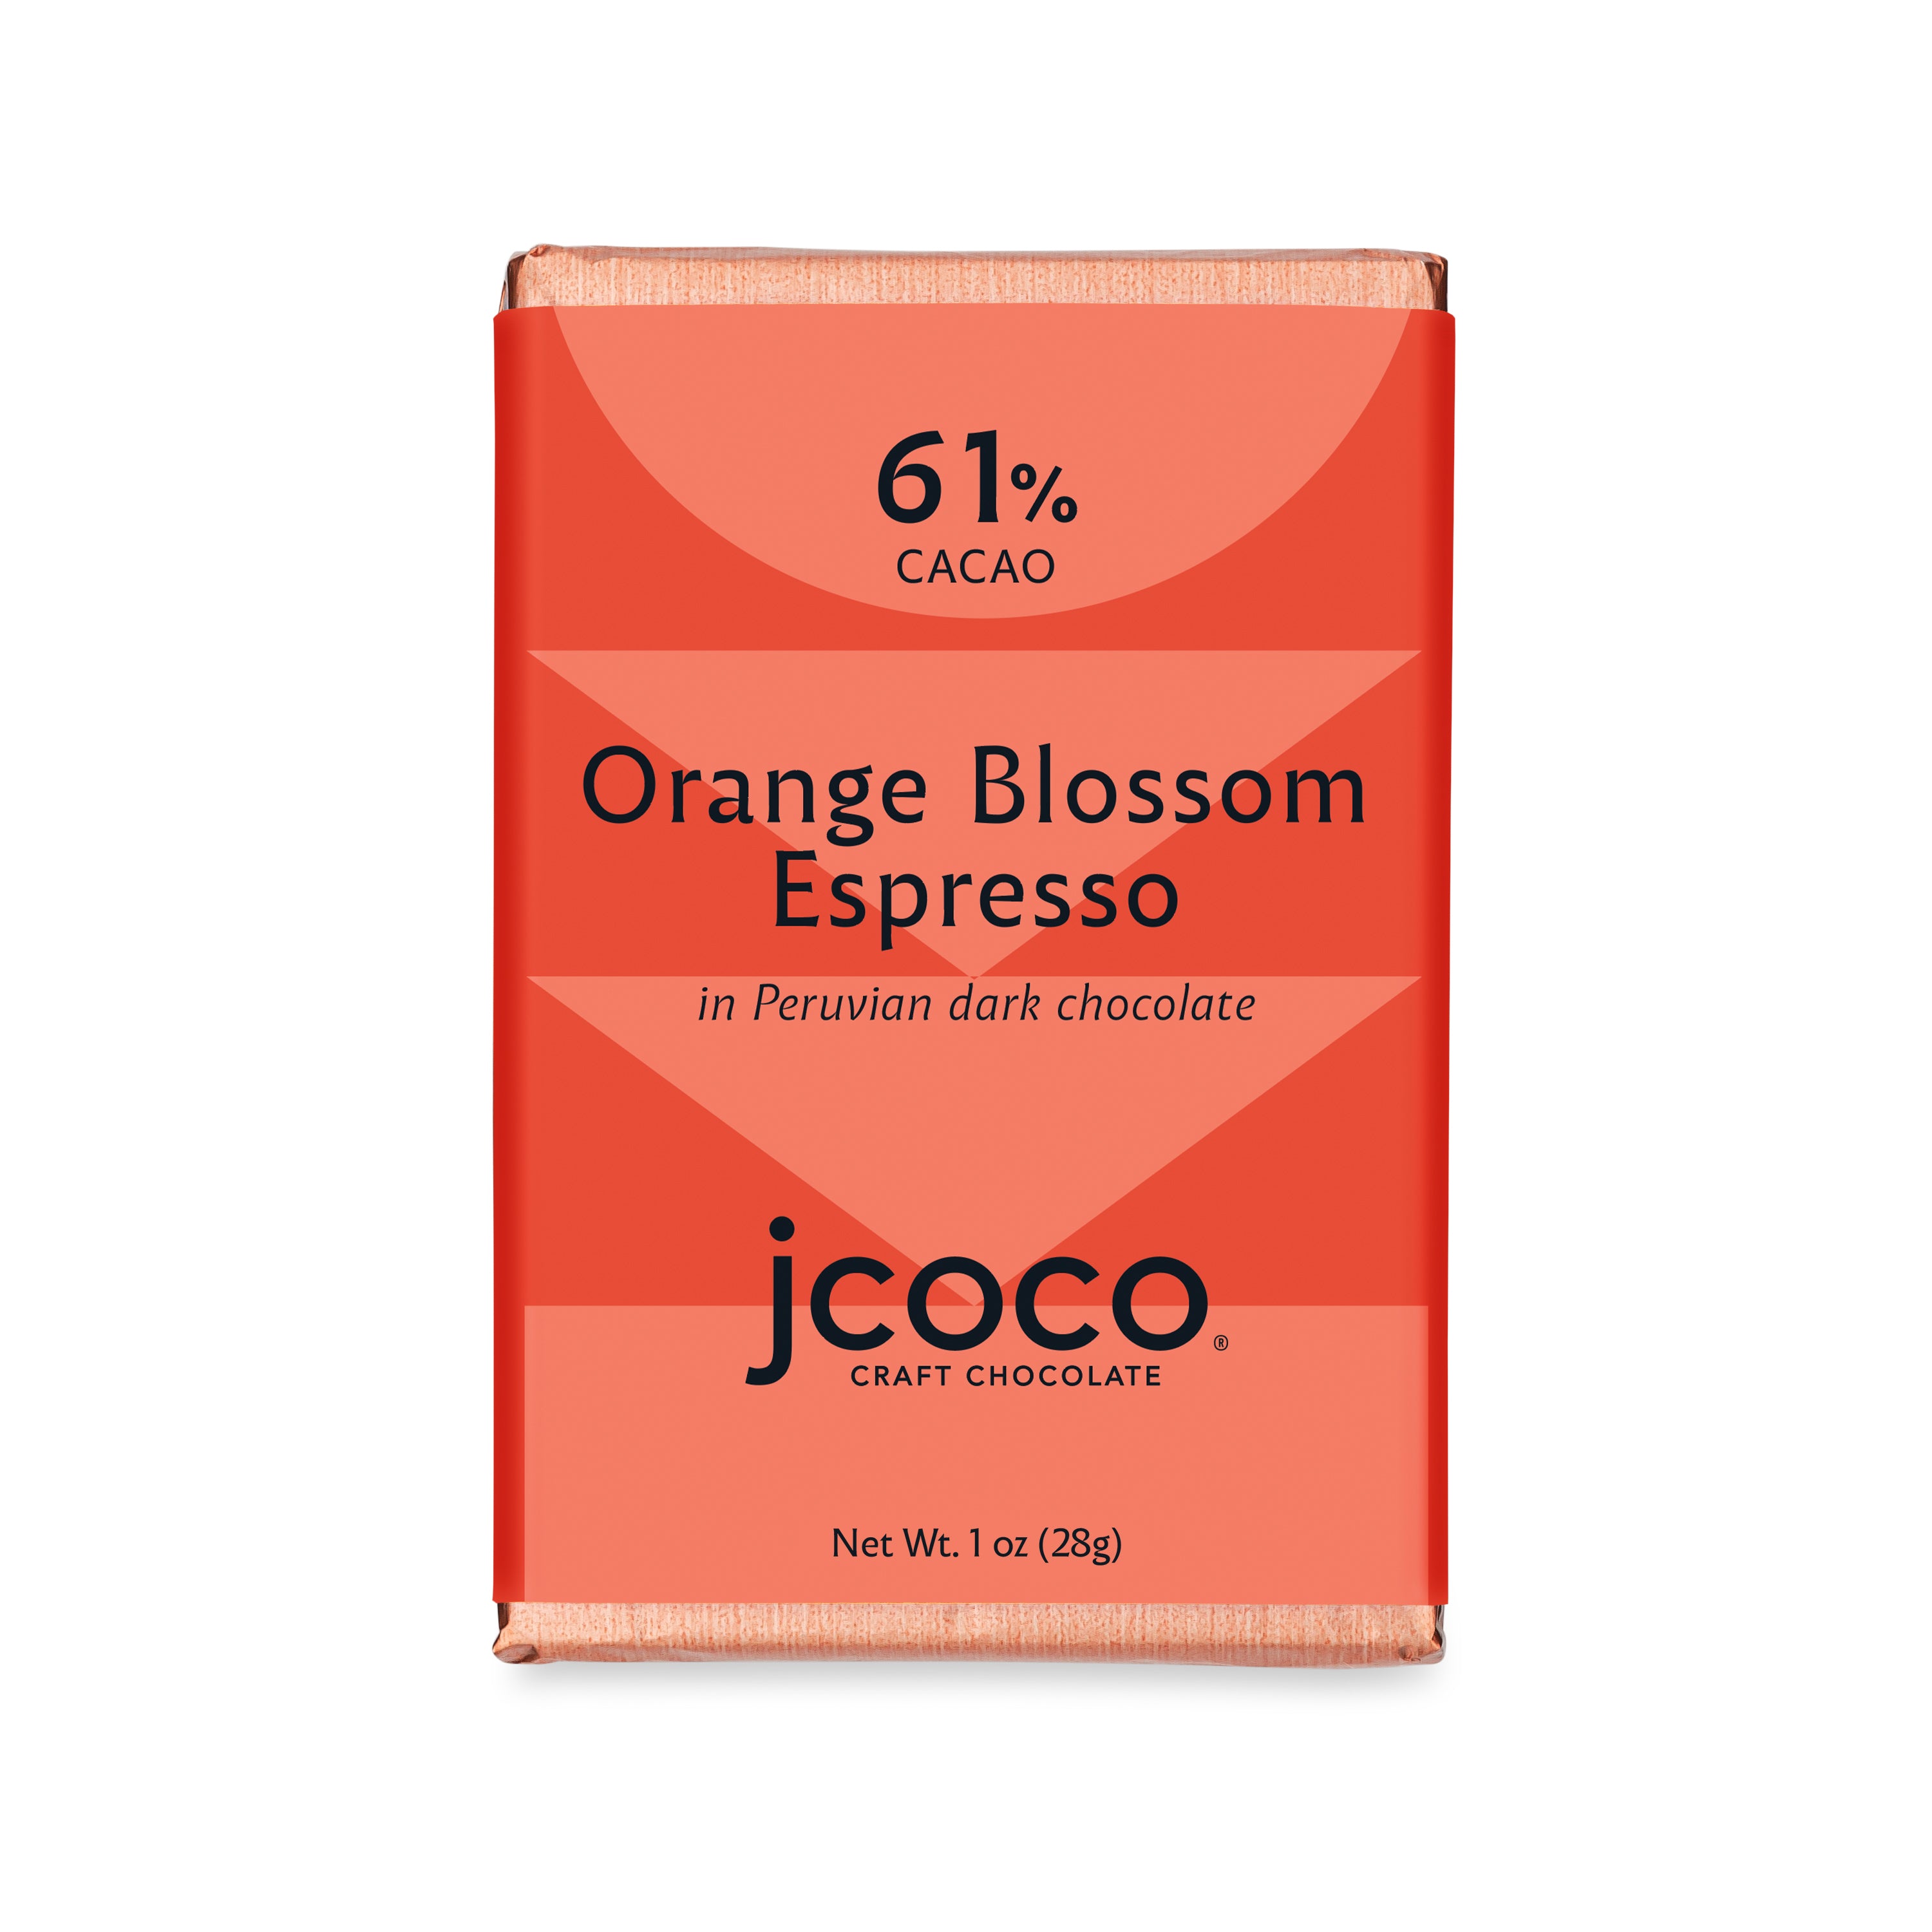 Orange blossom espresso bar 1oz chocolate bar